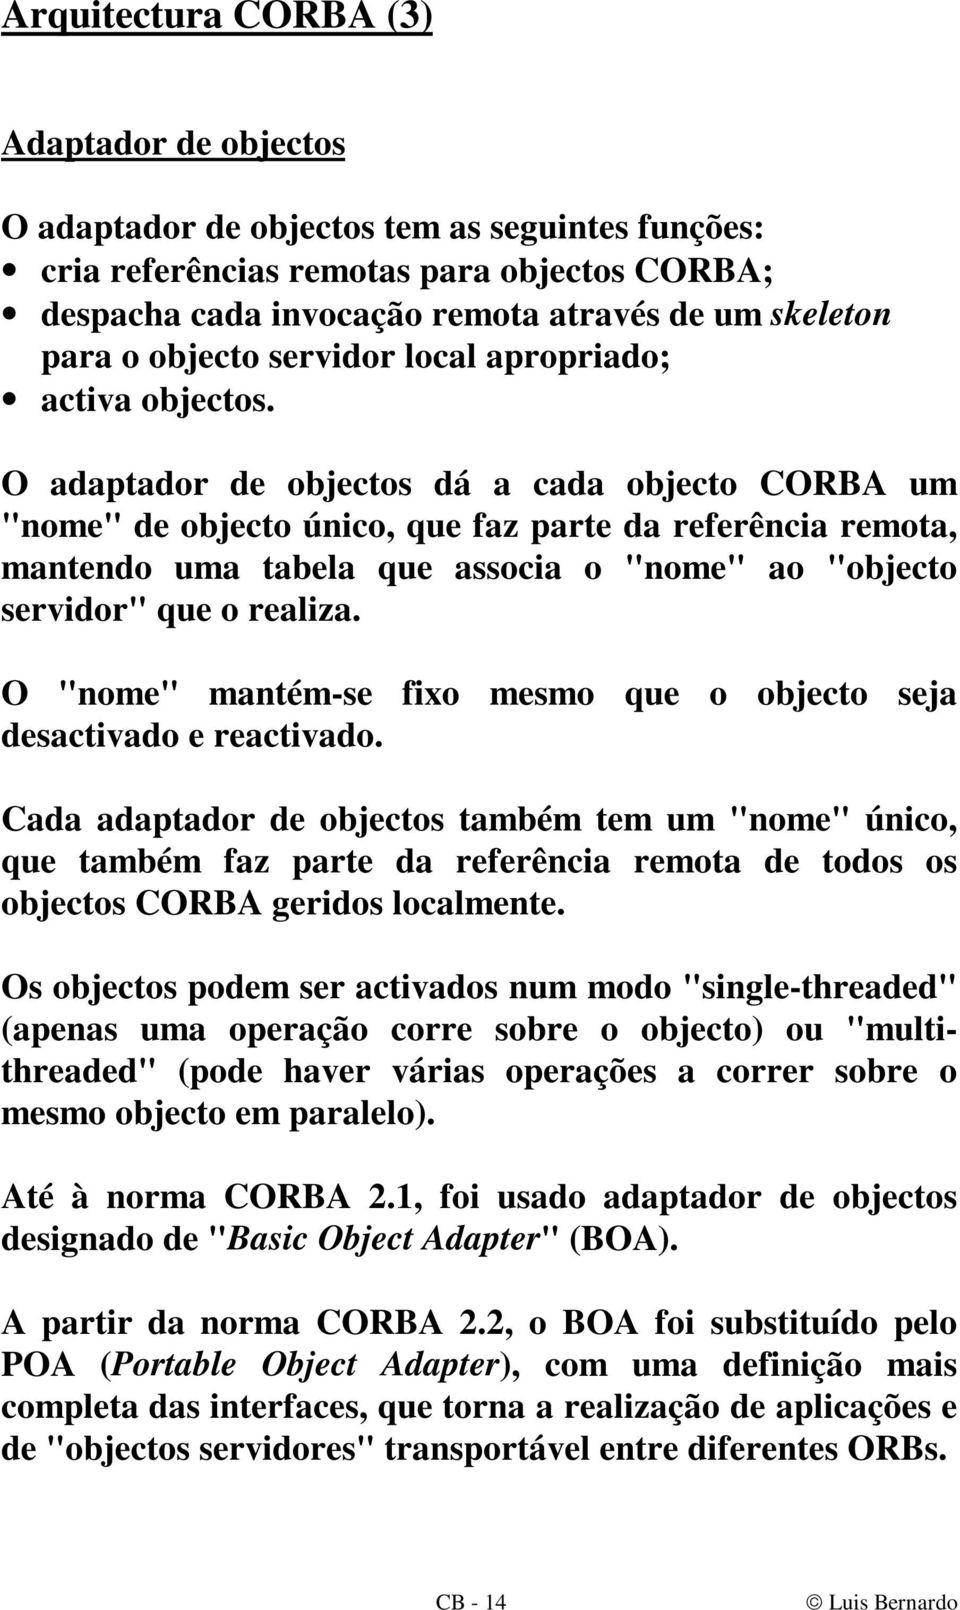 O adaptador de objectos dá a cada objecto CORBA um "nome" de objecto único, que faz parte da referência remota, mantendo uma tabela que associa o "nome" ao "objecto servidor" que o realiza.